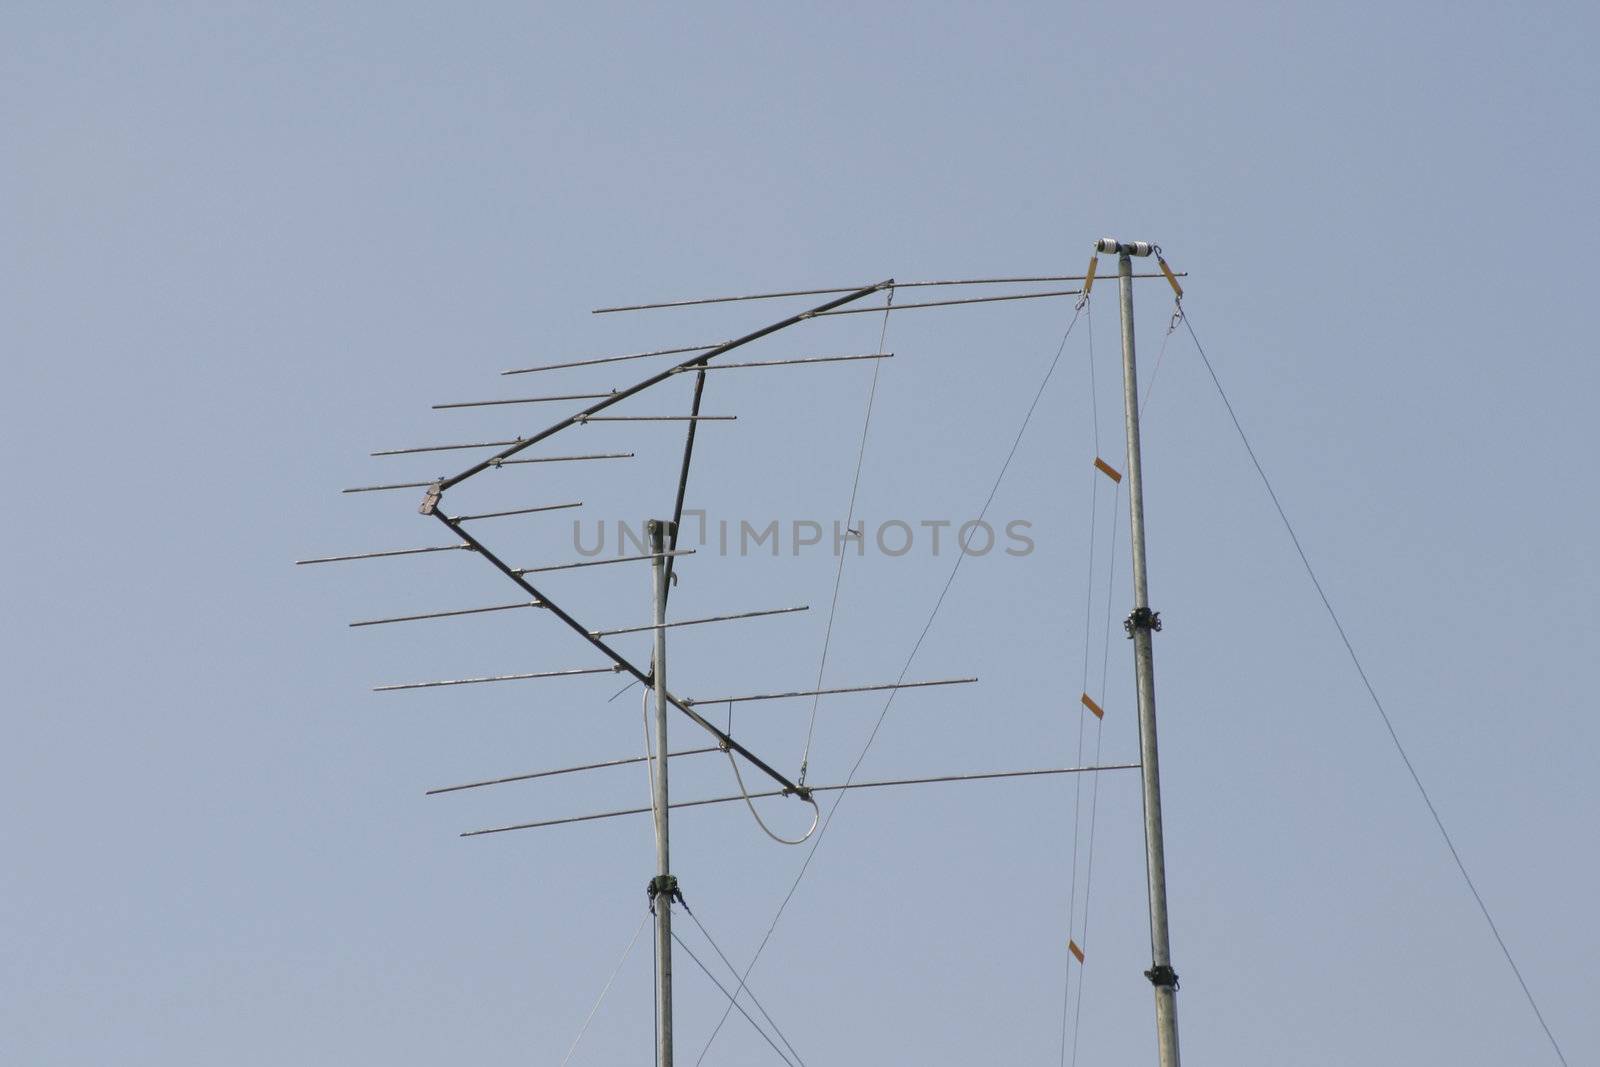 amateur radio aerials by leafy